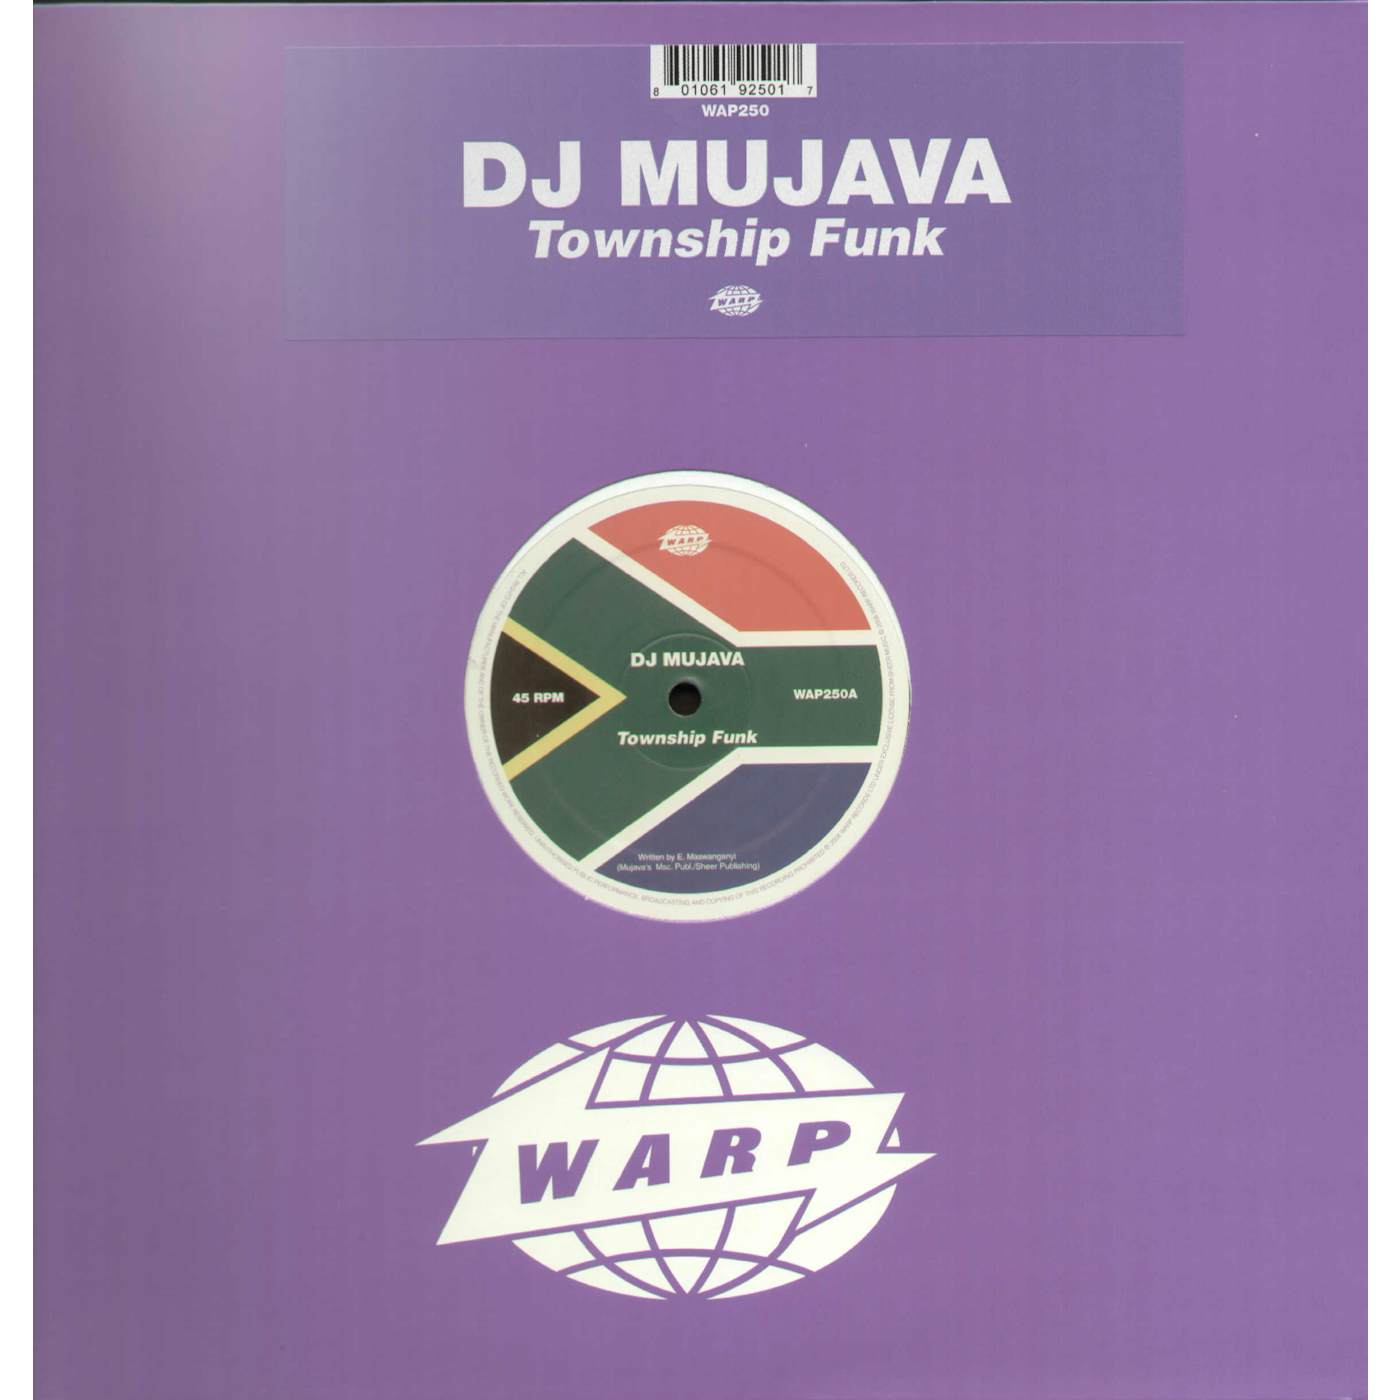 Dj Mujava Township Funk Vinyl Record